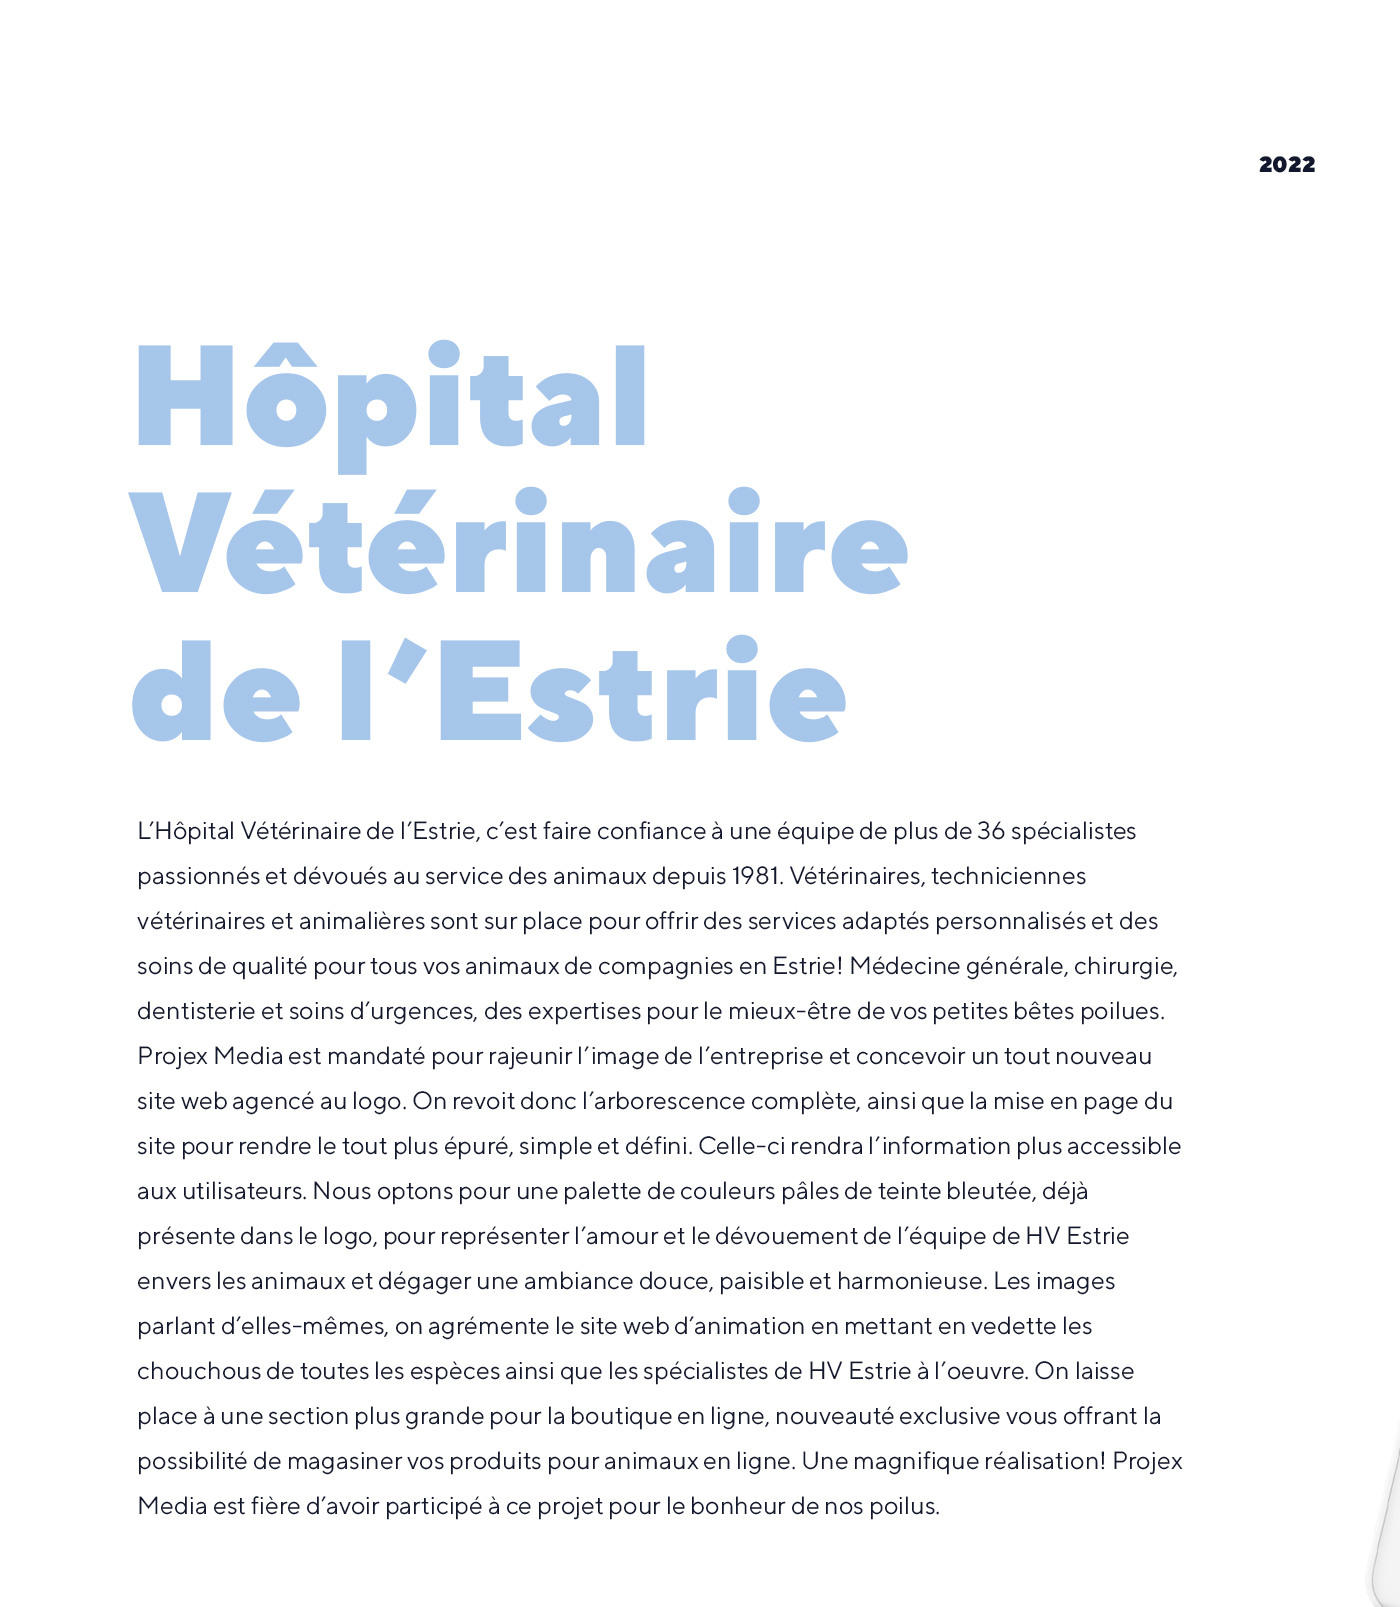 Site web de l'Hôpital Vétérinaire de l'Estrie / 2022 - Réalisation signée Projex Media